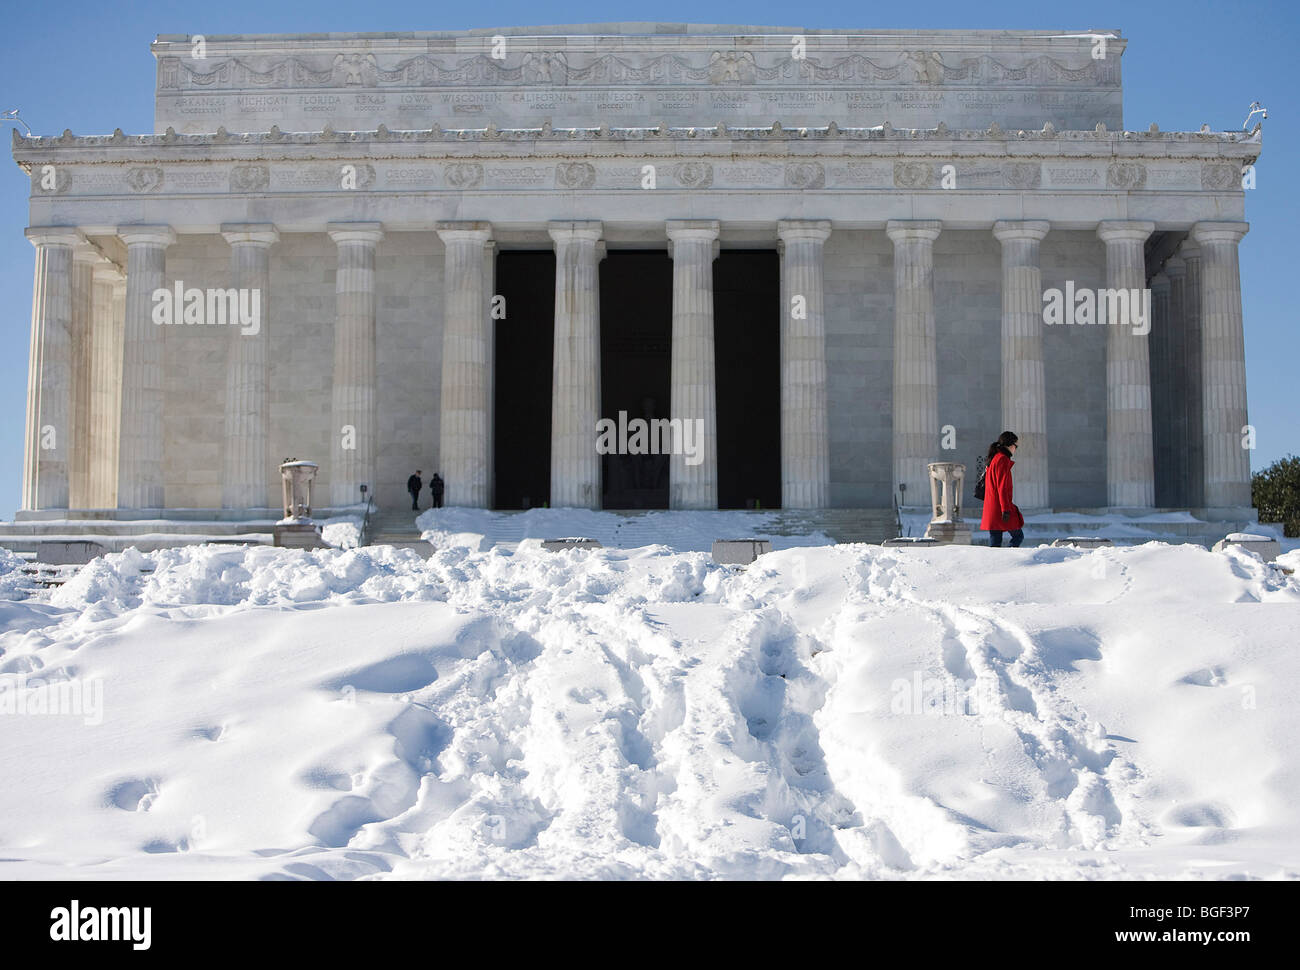 Une scène de neige à Washington DC au National Mall montrant le Lincoln Memorial. Banque D'Images